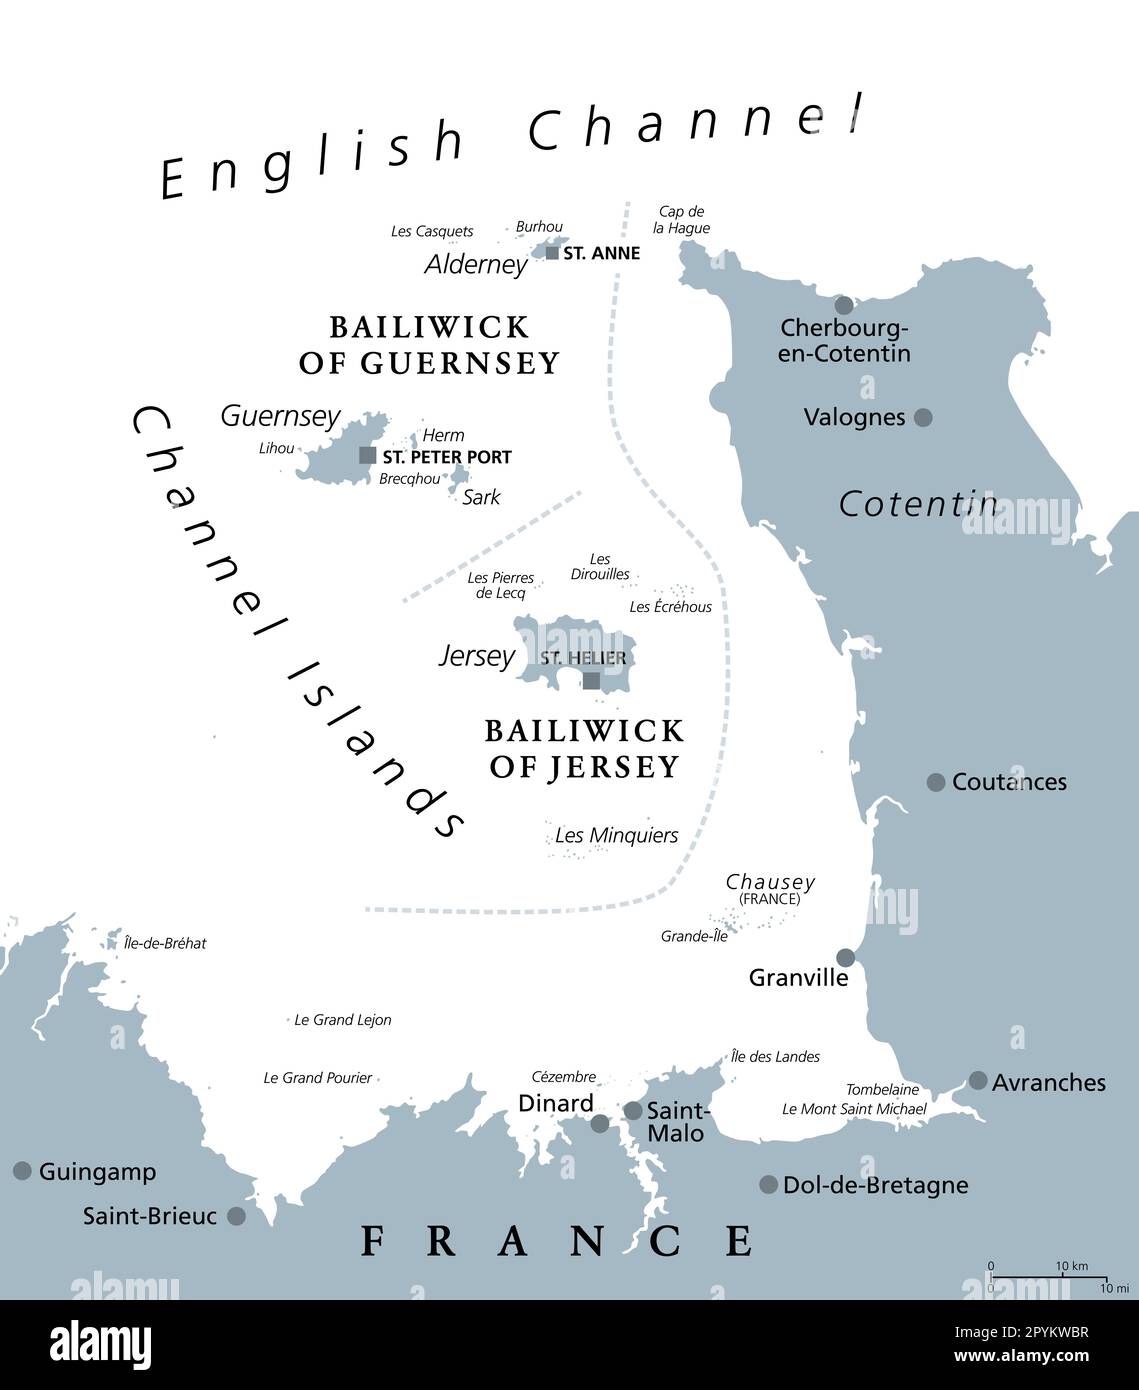 Kanalinseln, graue politische Karte. Kronenabhängigkeiten Bailiwick von Guernsey und Bailiwick von Jersey. Inselgruppe im Ärmelkanal. Stockfoto